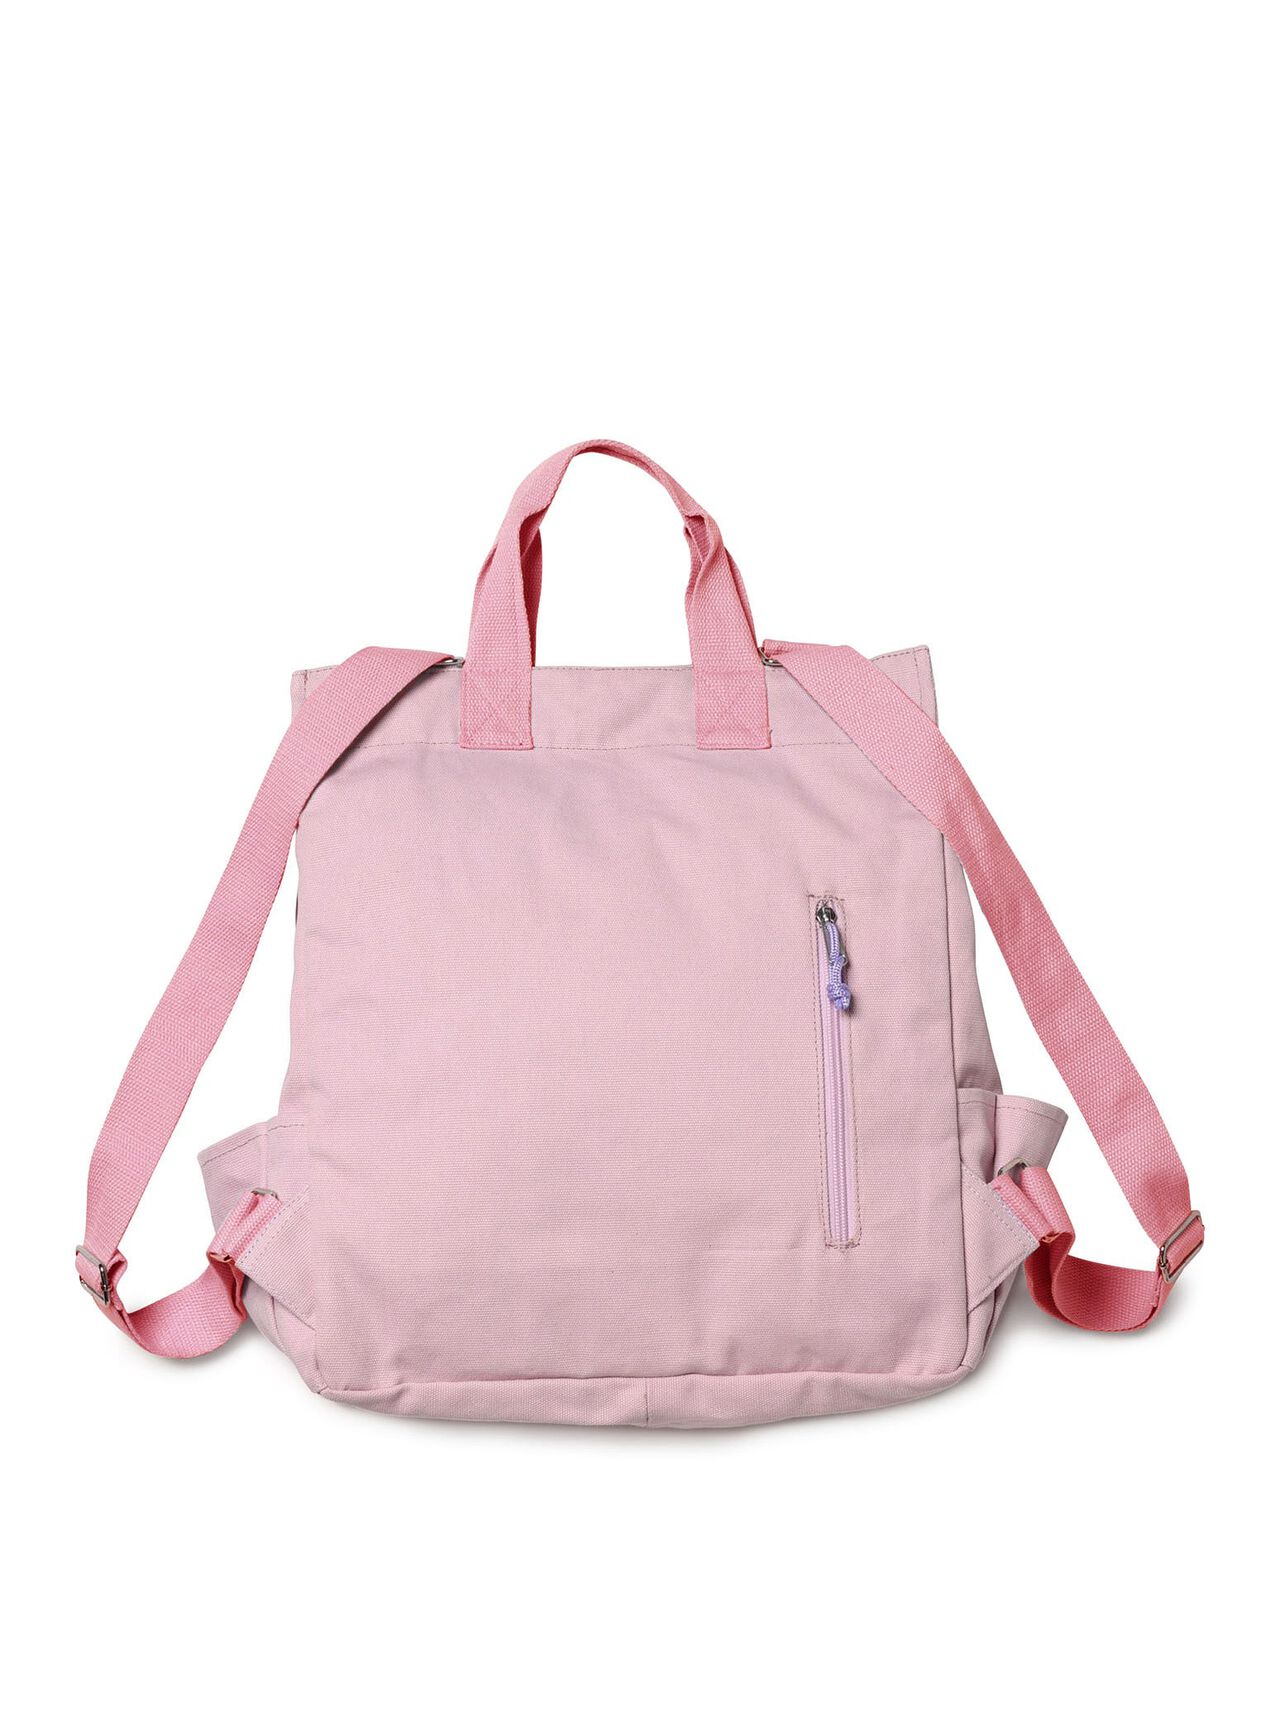 10-pocket backpack,ONE, large image number 1